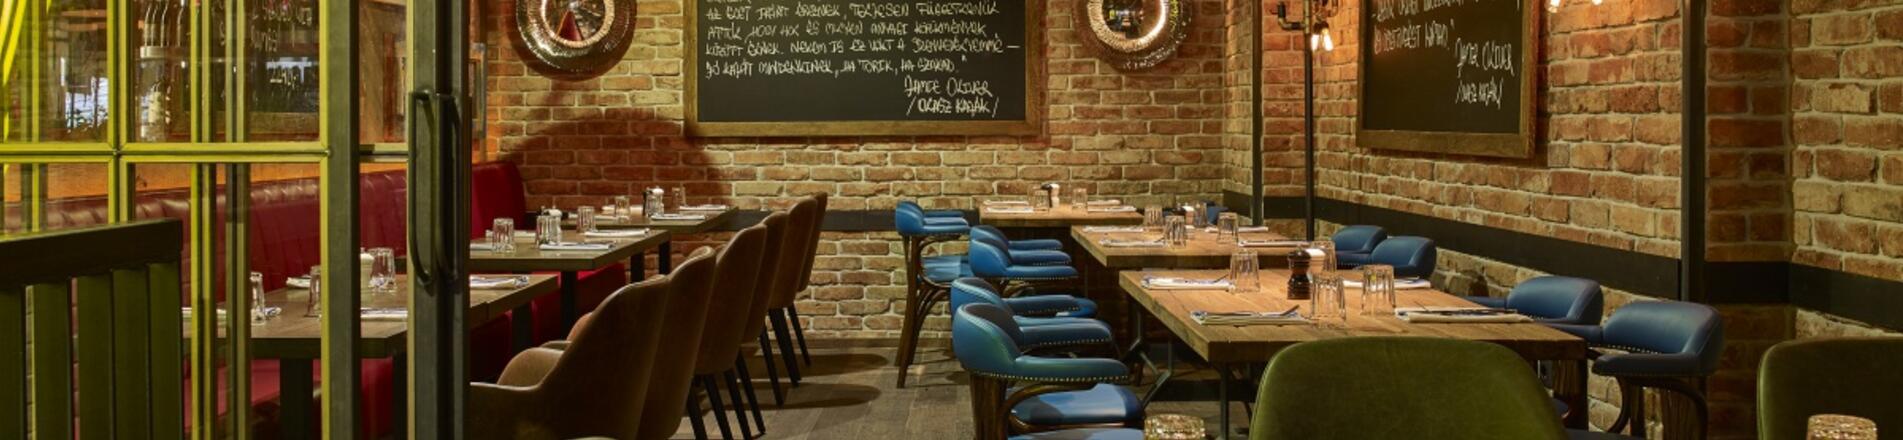 Üzleti éttermek Budapesten: mutatjuk a legjobb helyszíneket üzleti megbeszélésekre, meetingekre